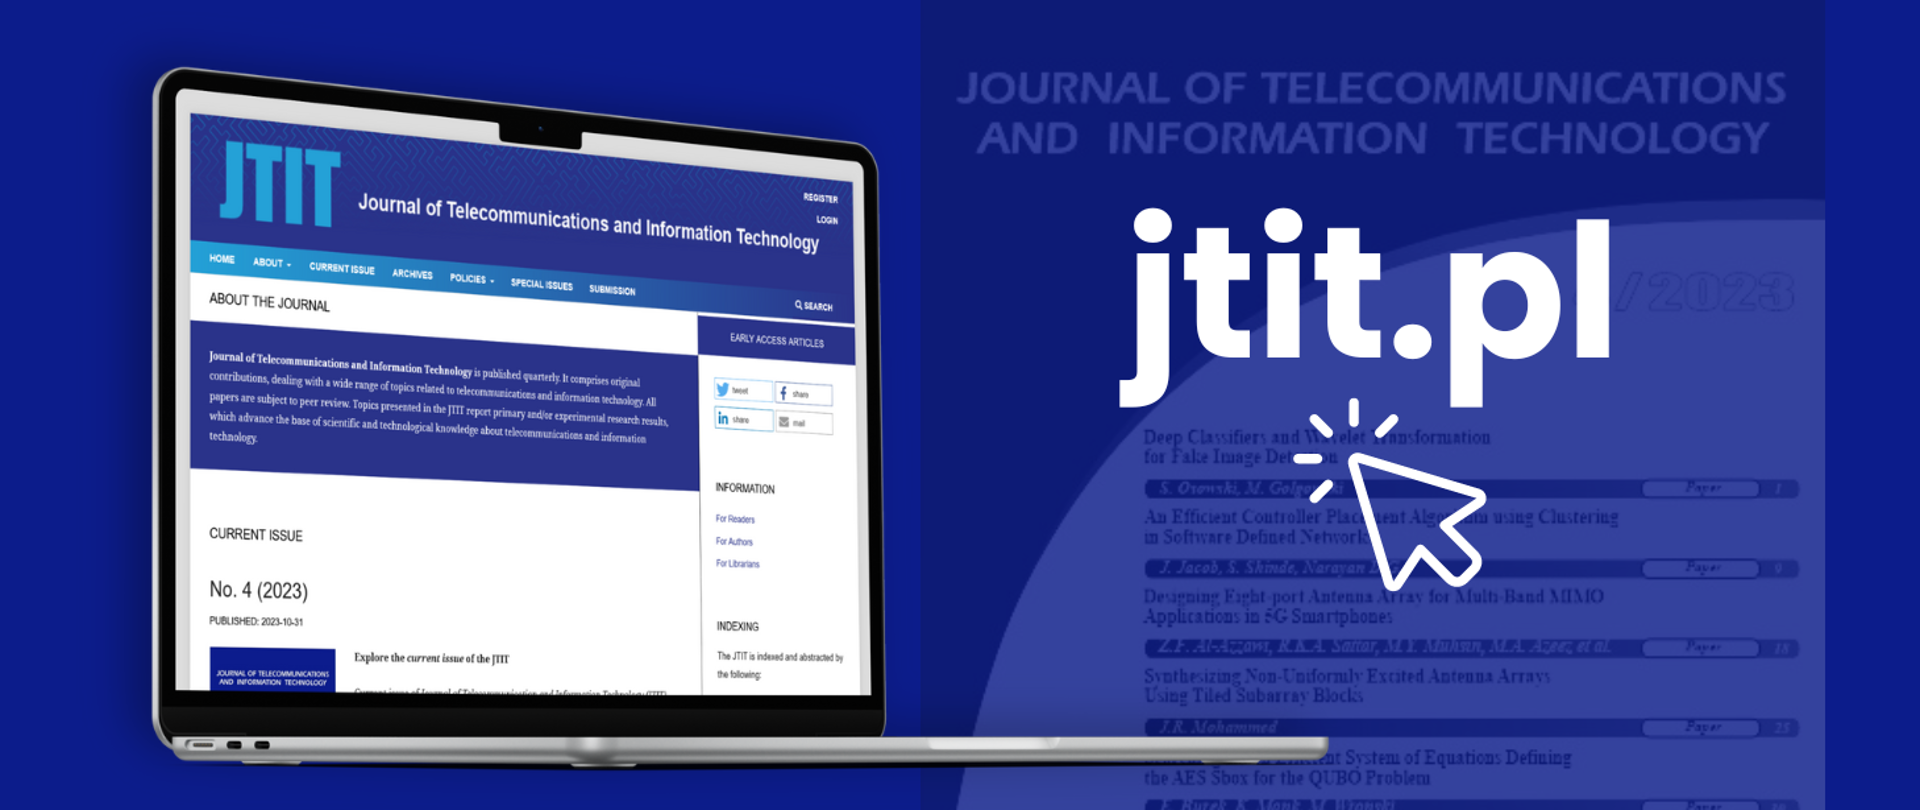 Laptop z wyświetloną na ekranie stroną kwartalnika JTIT, obok napis: jtit.pl i rysunek strzałki z efektem klikania.